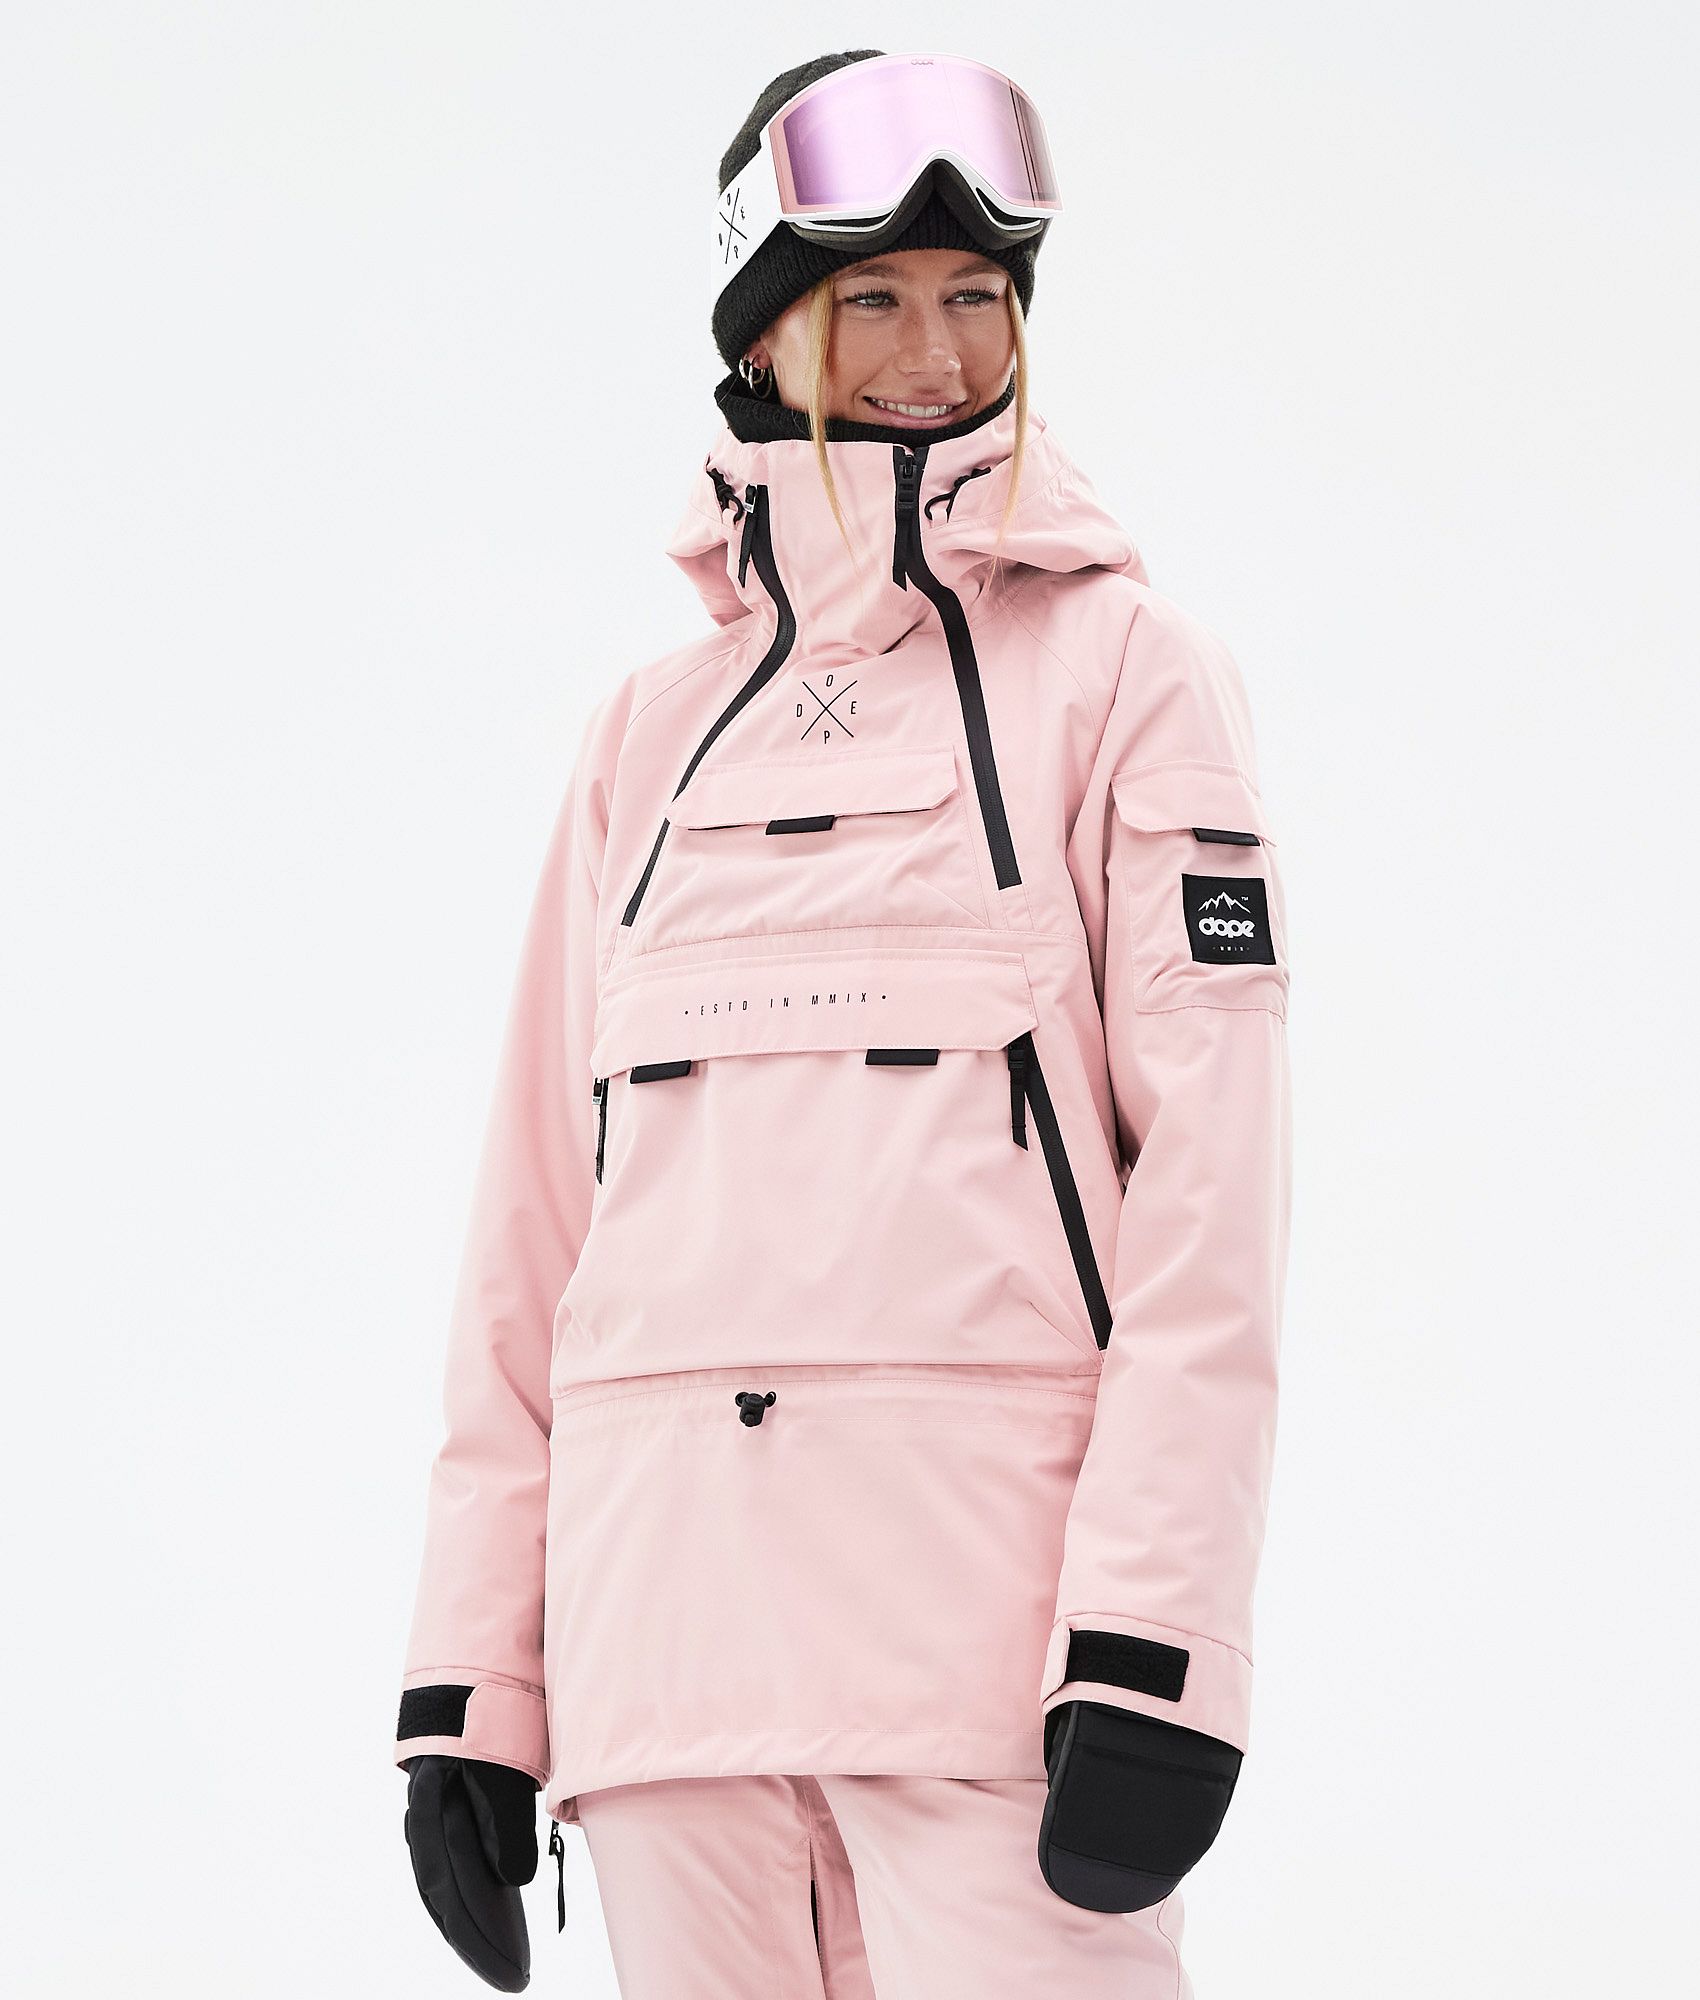 KEXIMIXUE Combinaison de Ski Femmes Snowboard Skisuit Sports De Plein Air Zipper Ski Suit Vêtements de Ski avec capuche 